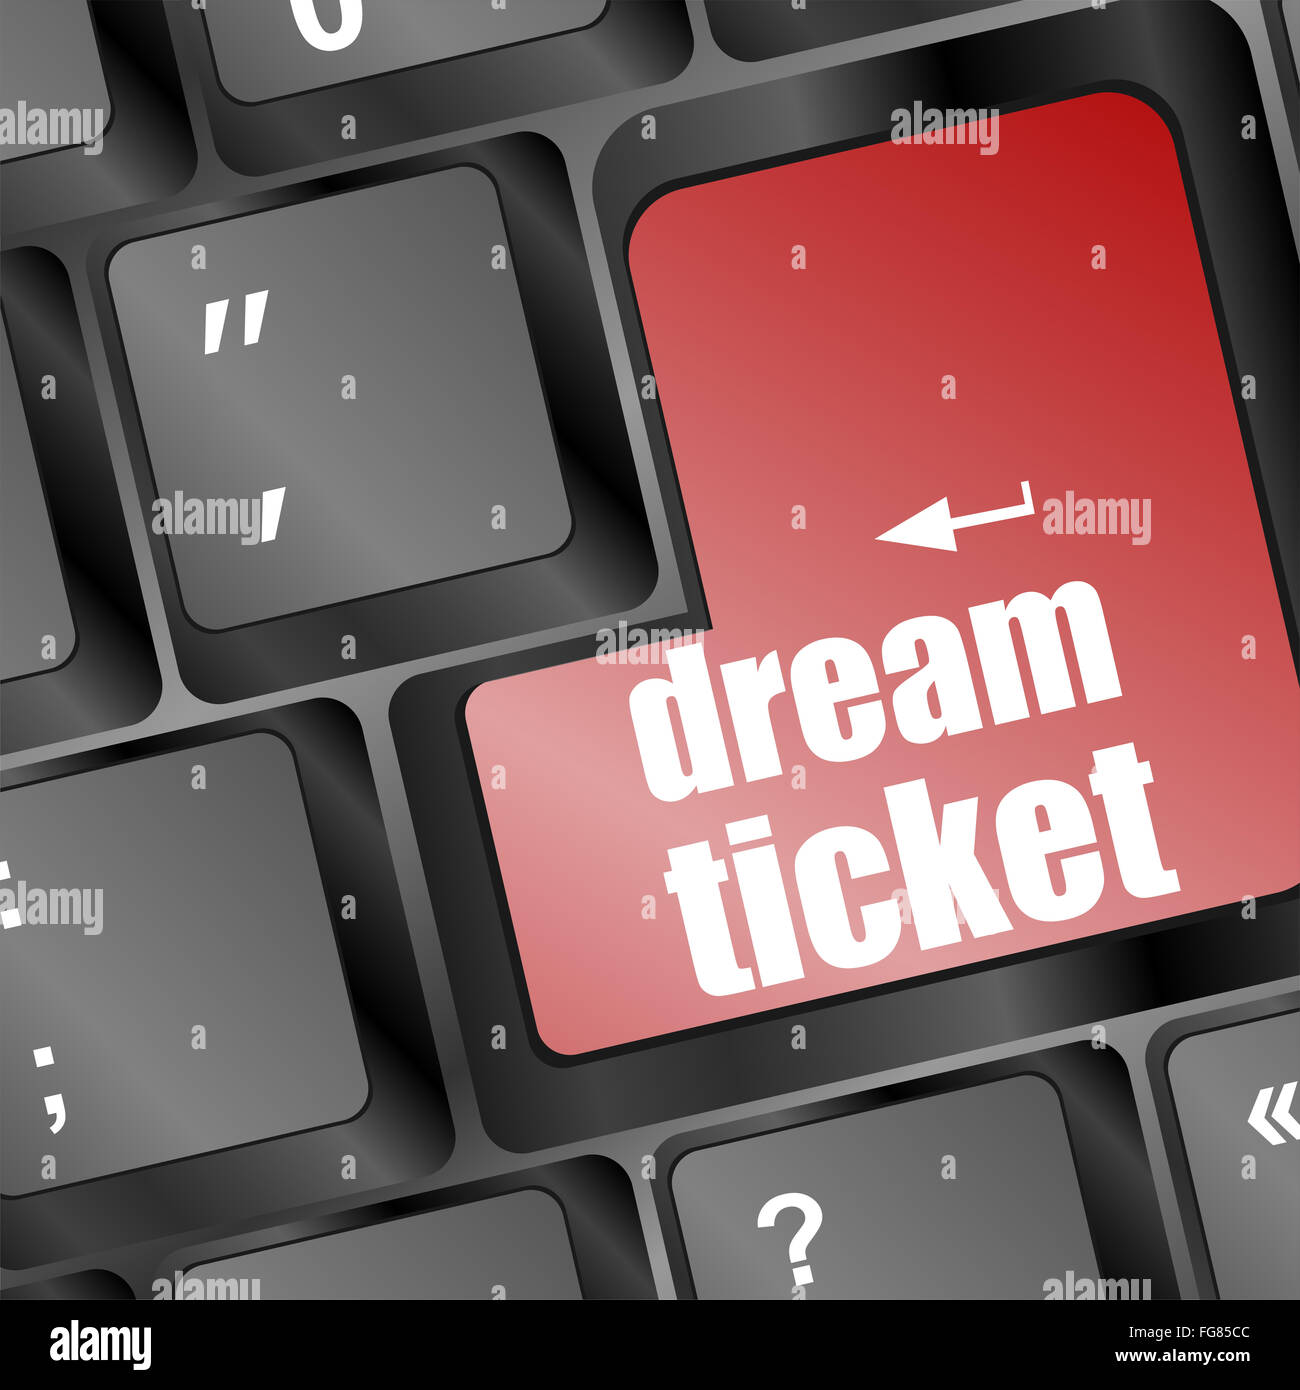 Dream ticket affichant concept d'idée sur le clavier, la création et la réussite Banque D'Images